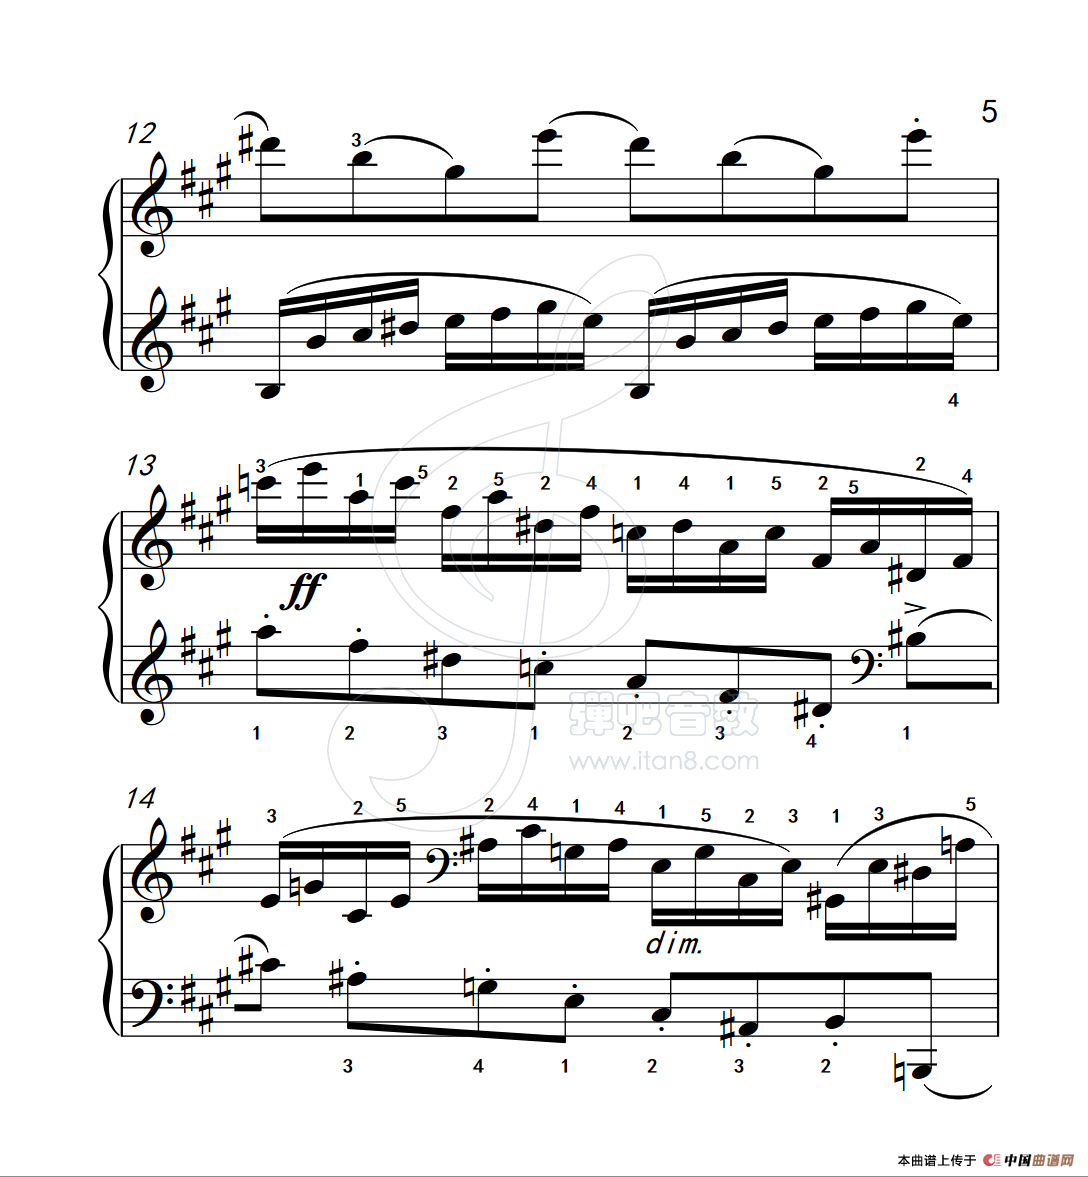 《练习曲 40》钢琴曲谱图分享